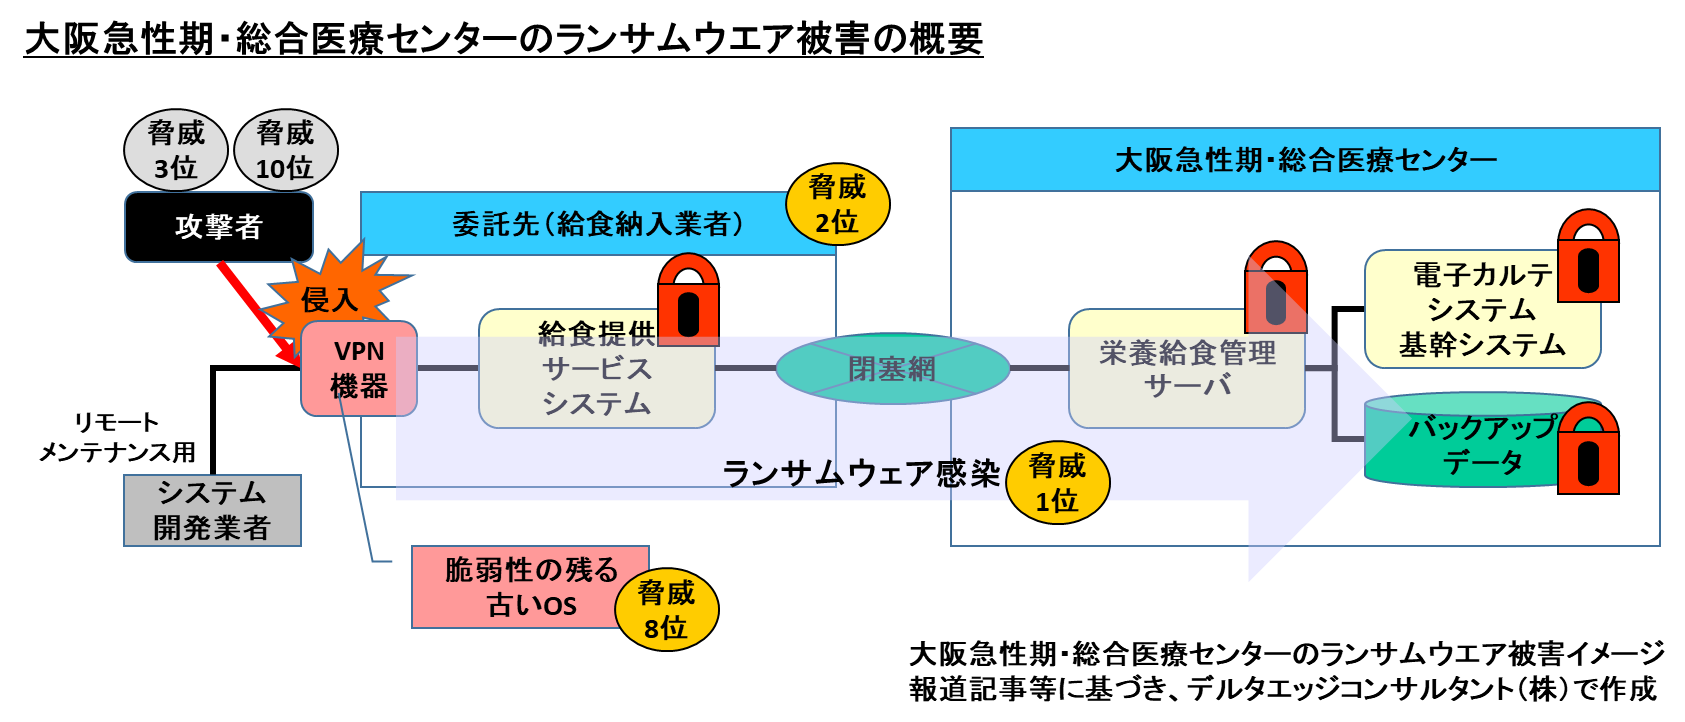 img10 大阪急性期・総合医療センターのランサムウェア被害の概要